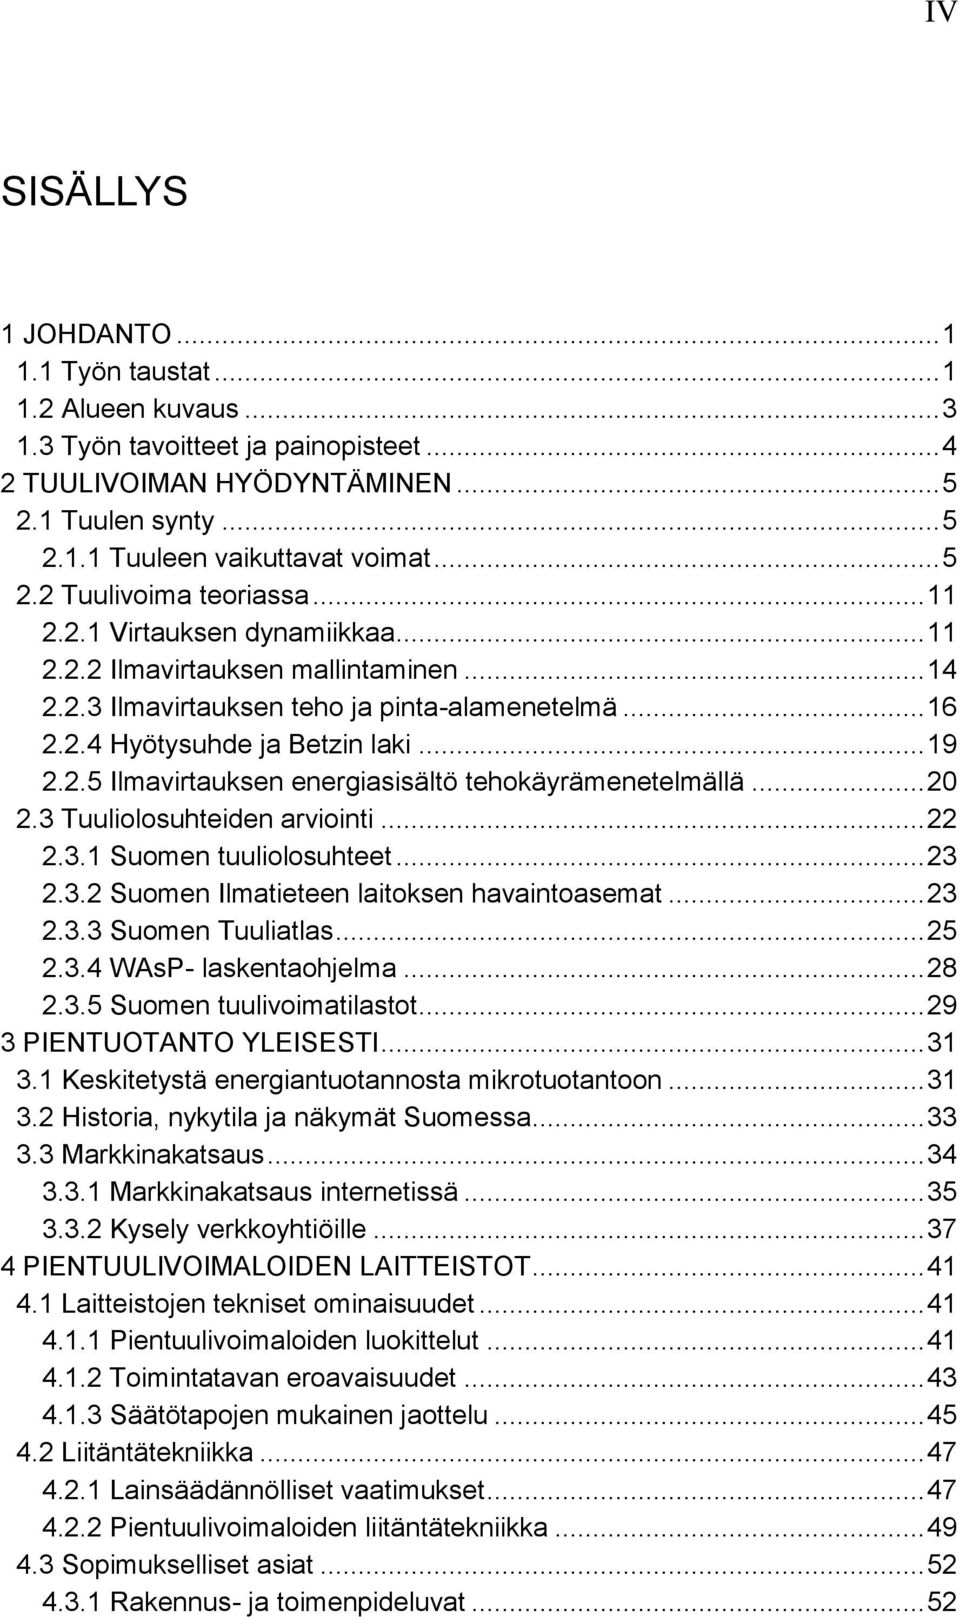 .. 19 2.2.5 Ilmavirtauksen energiasisältö tehokäyrämenetelmällä... 20 2.3 Tuuliolosuhteiden arviointi... 22 2.3.1 Suomen tuuliolosuhteet... 23 2.3.2 Suomen Ilmatieteen laitoksen havaintoasemat... 23 2.3.3 Suomen Tuuliatlas.